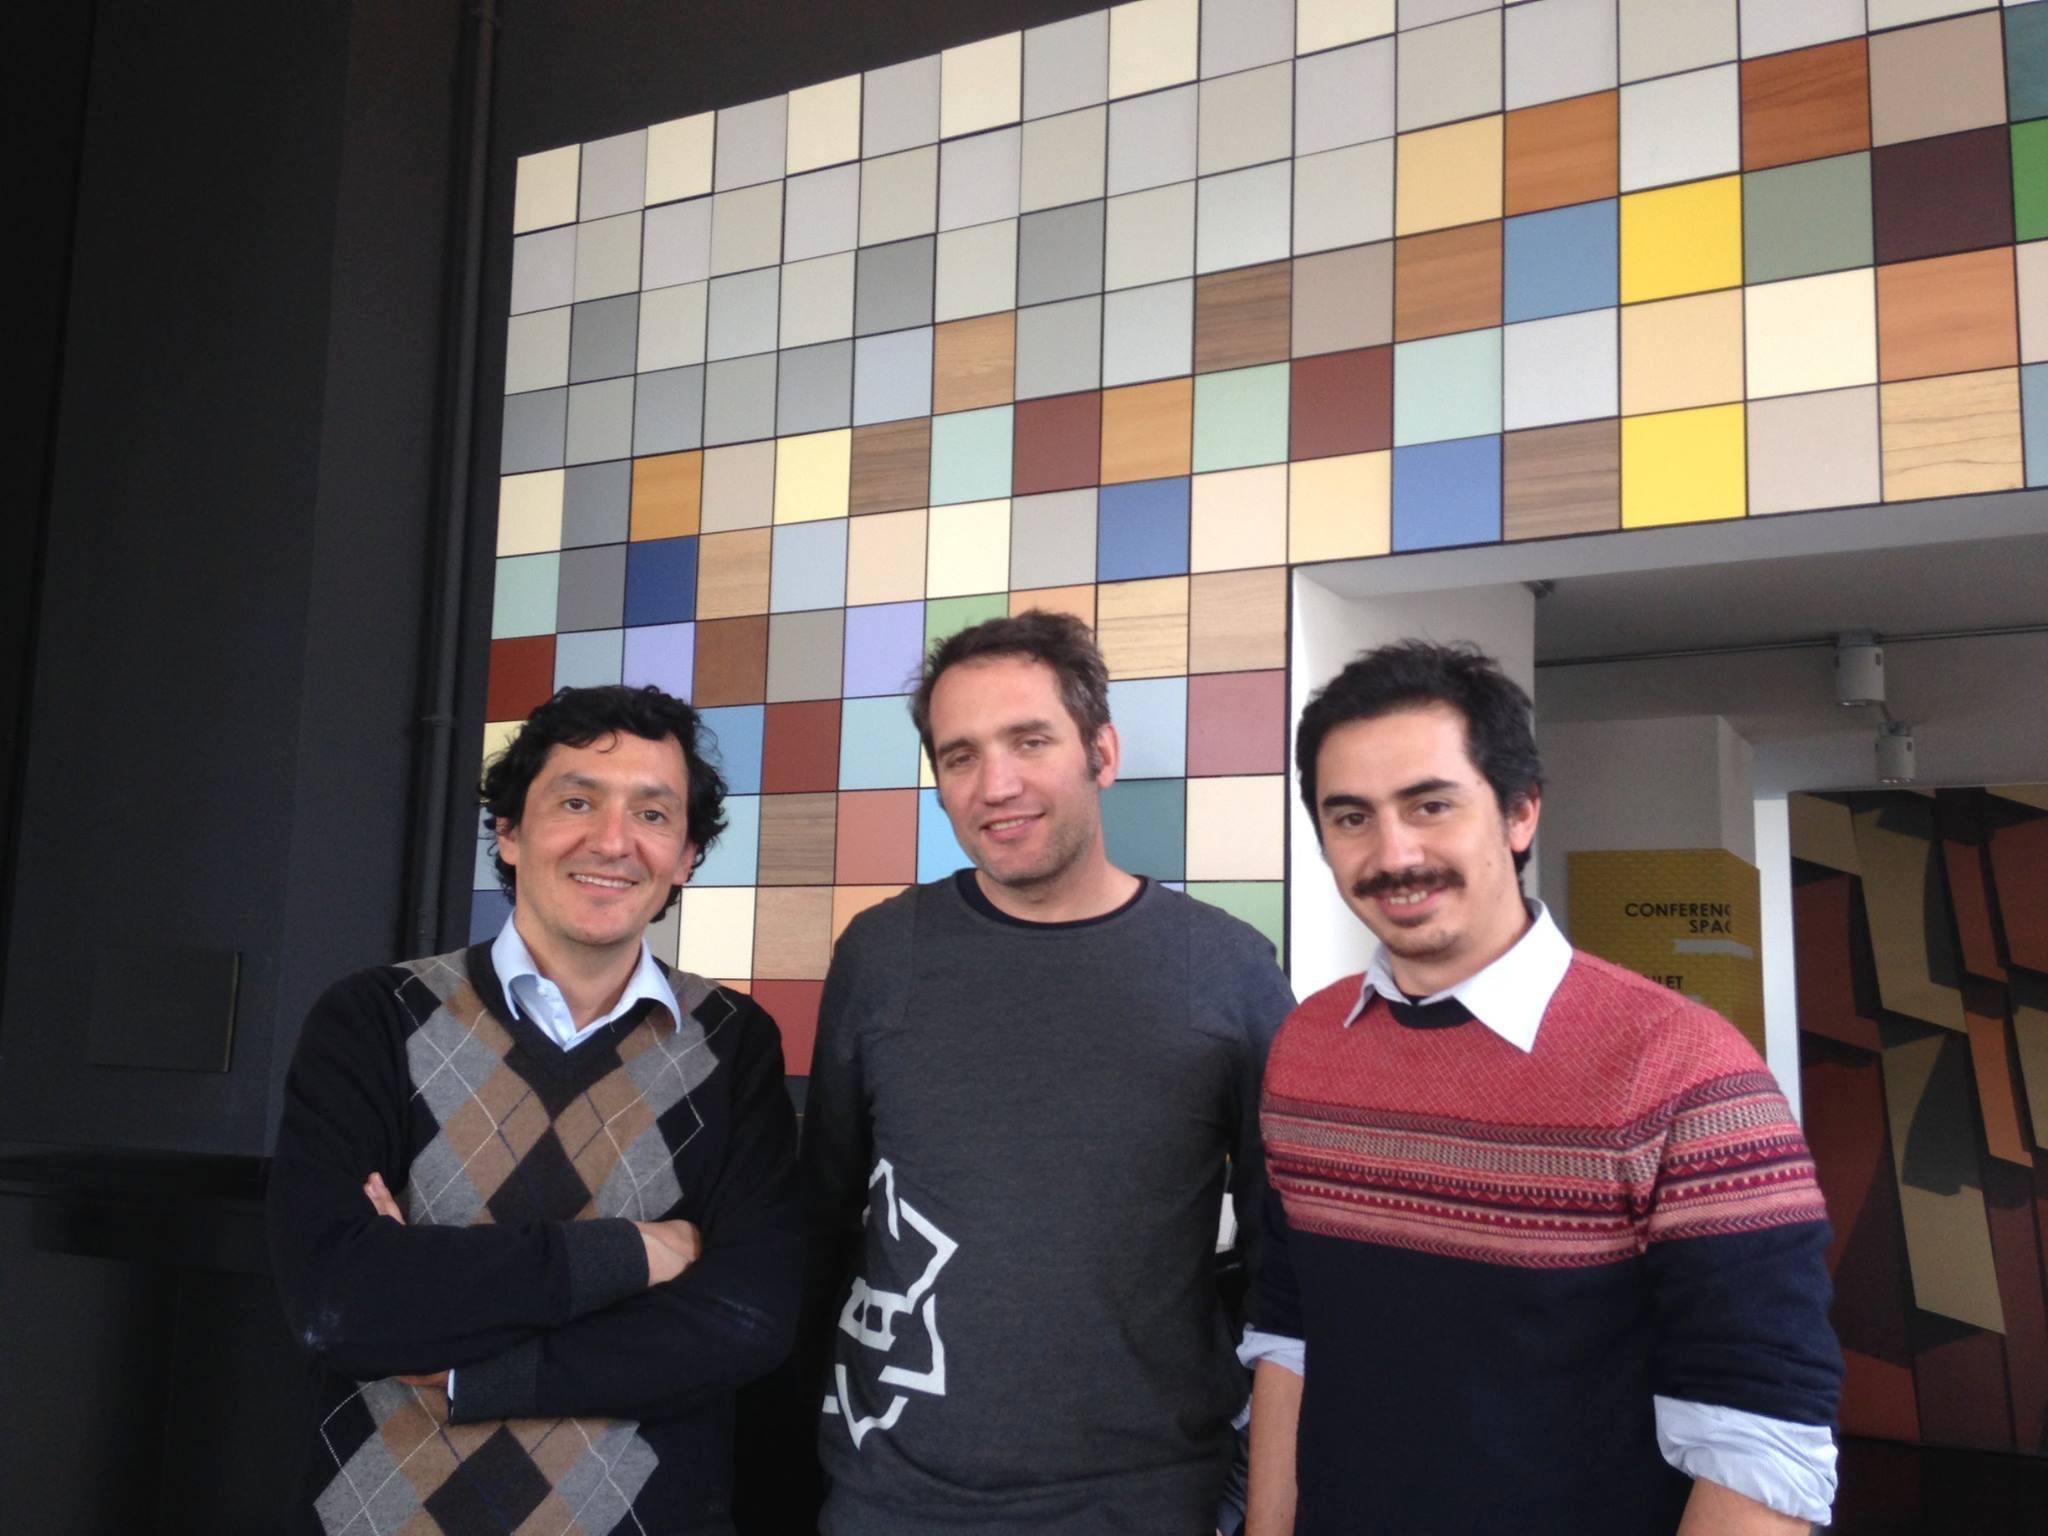 Jurado de la competencia: Pablo Marín, Cristián Jiménez y Juan Pablo Urrutia.